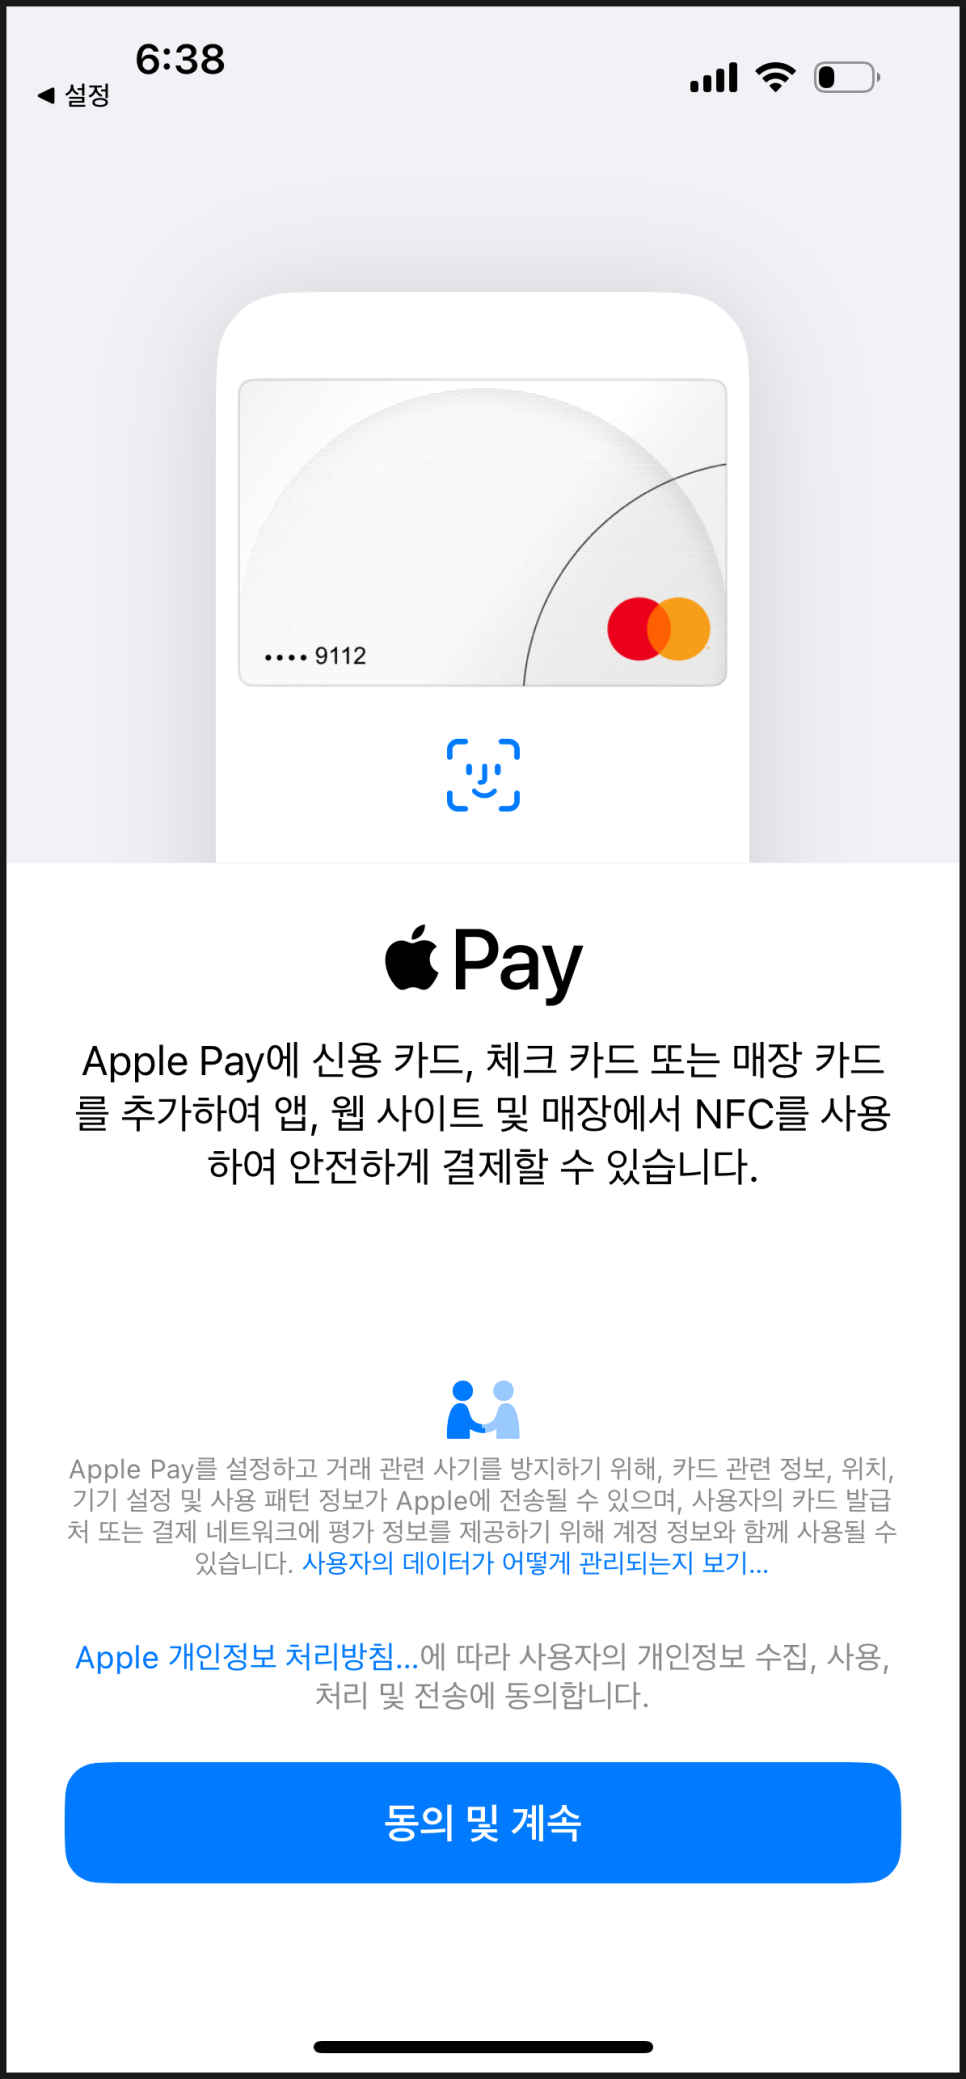 애플페이 카드 등록 사용법 및 현대앱카드로 등록하는 방법